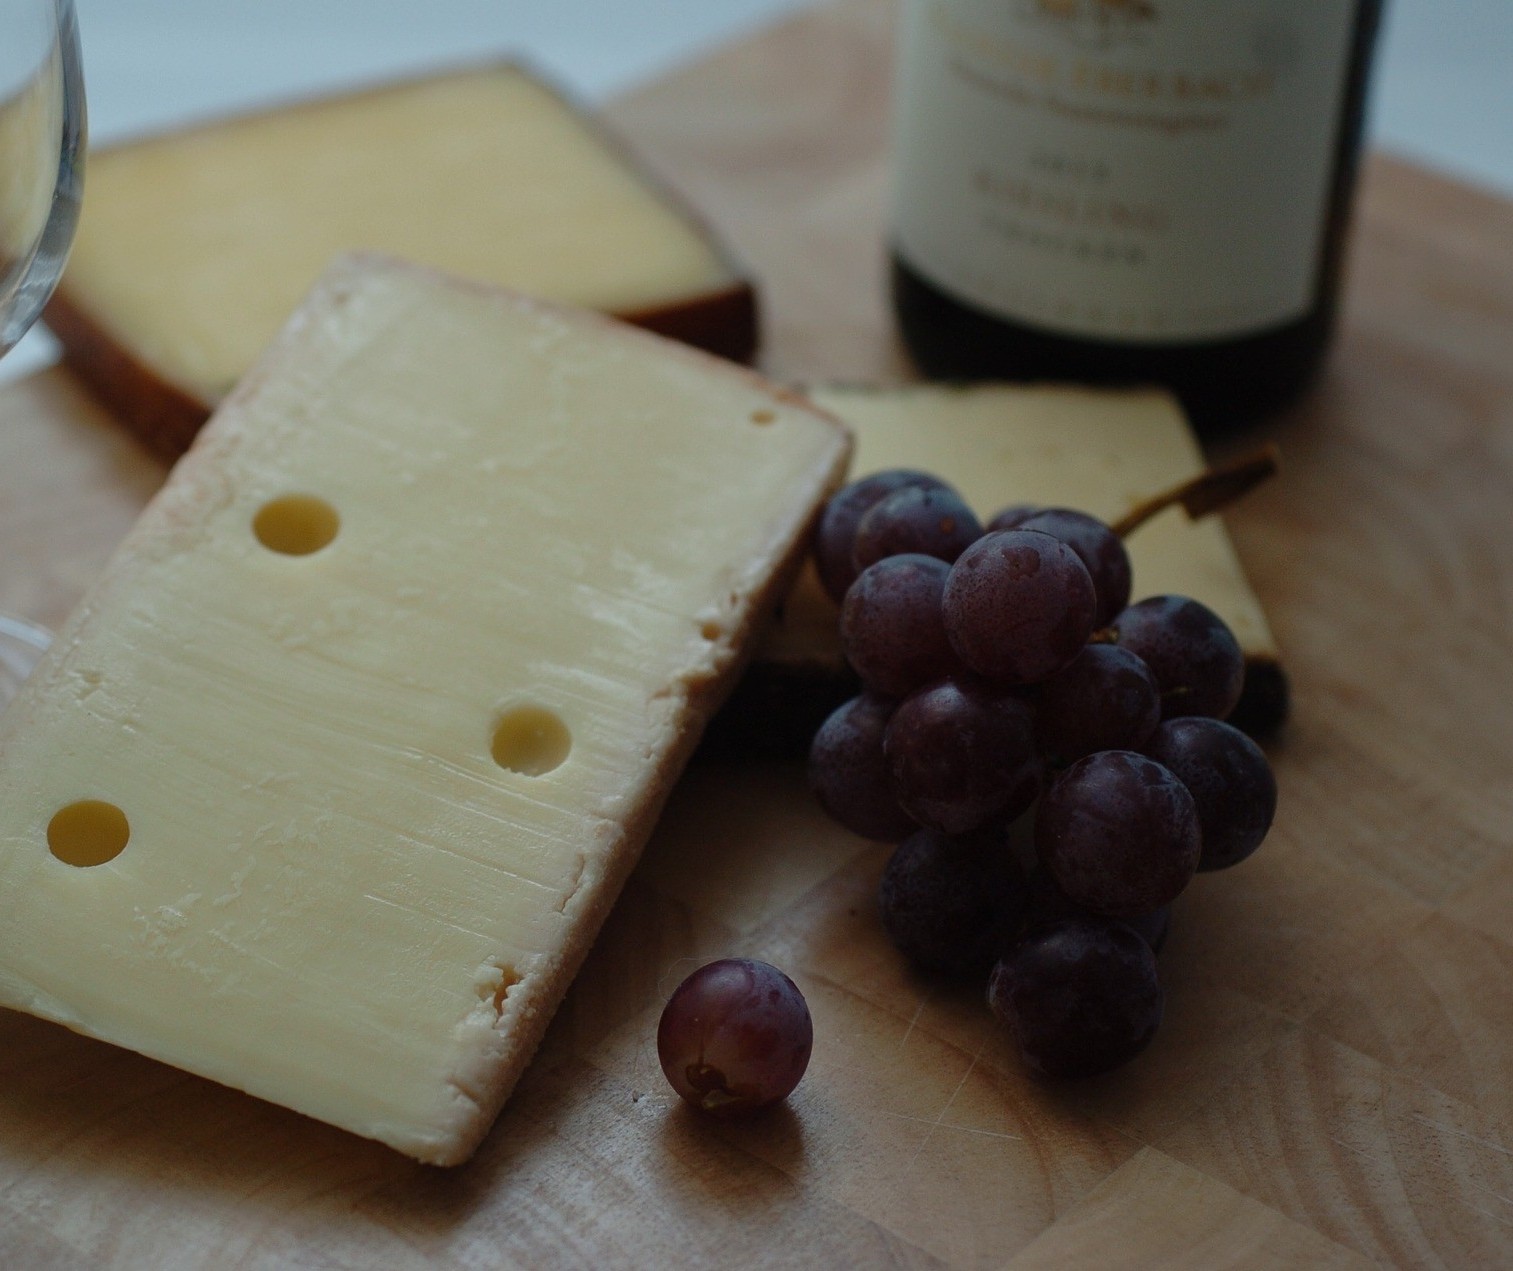 Vinho e queijo no Dia dos Pais tem que combinar textura e paladar